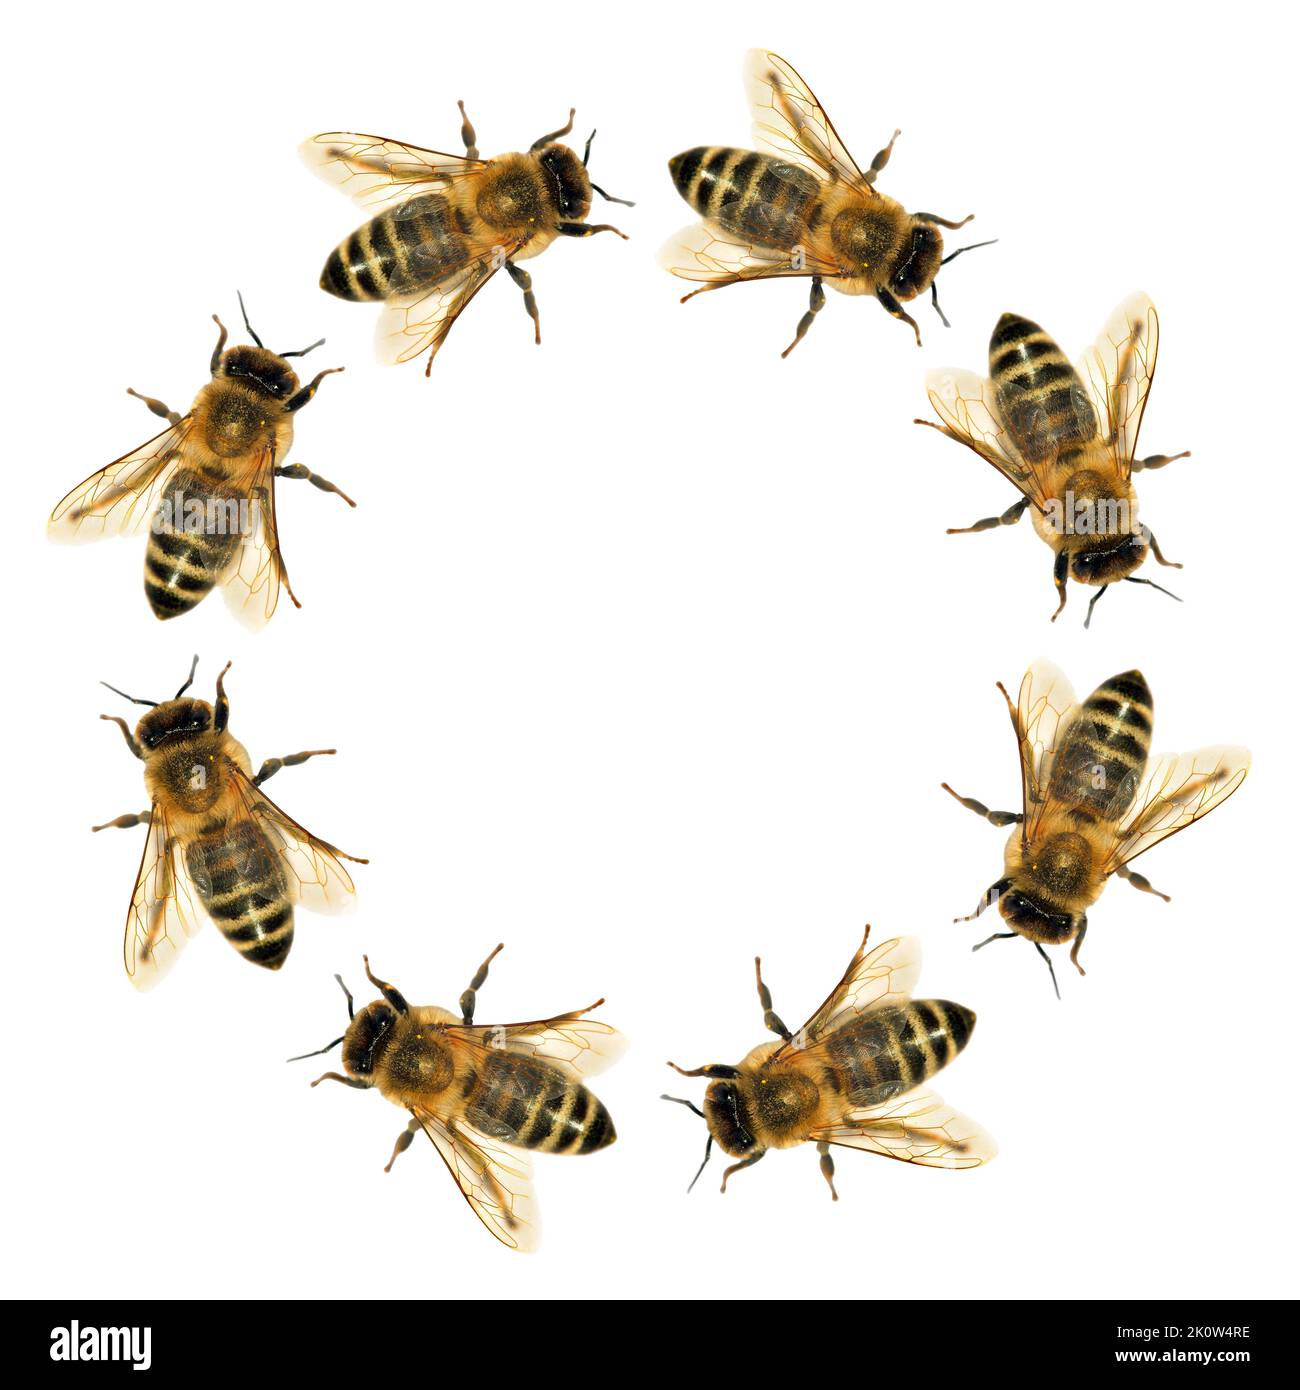 Grupo de abejas o abejas melíferas en el círculo de Apis mellifera latina, abejas melíferas europeas o occidentales aisladas sobre fondo blanco Foto de stock